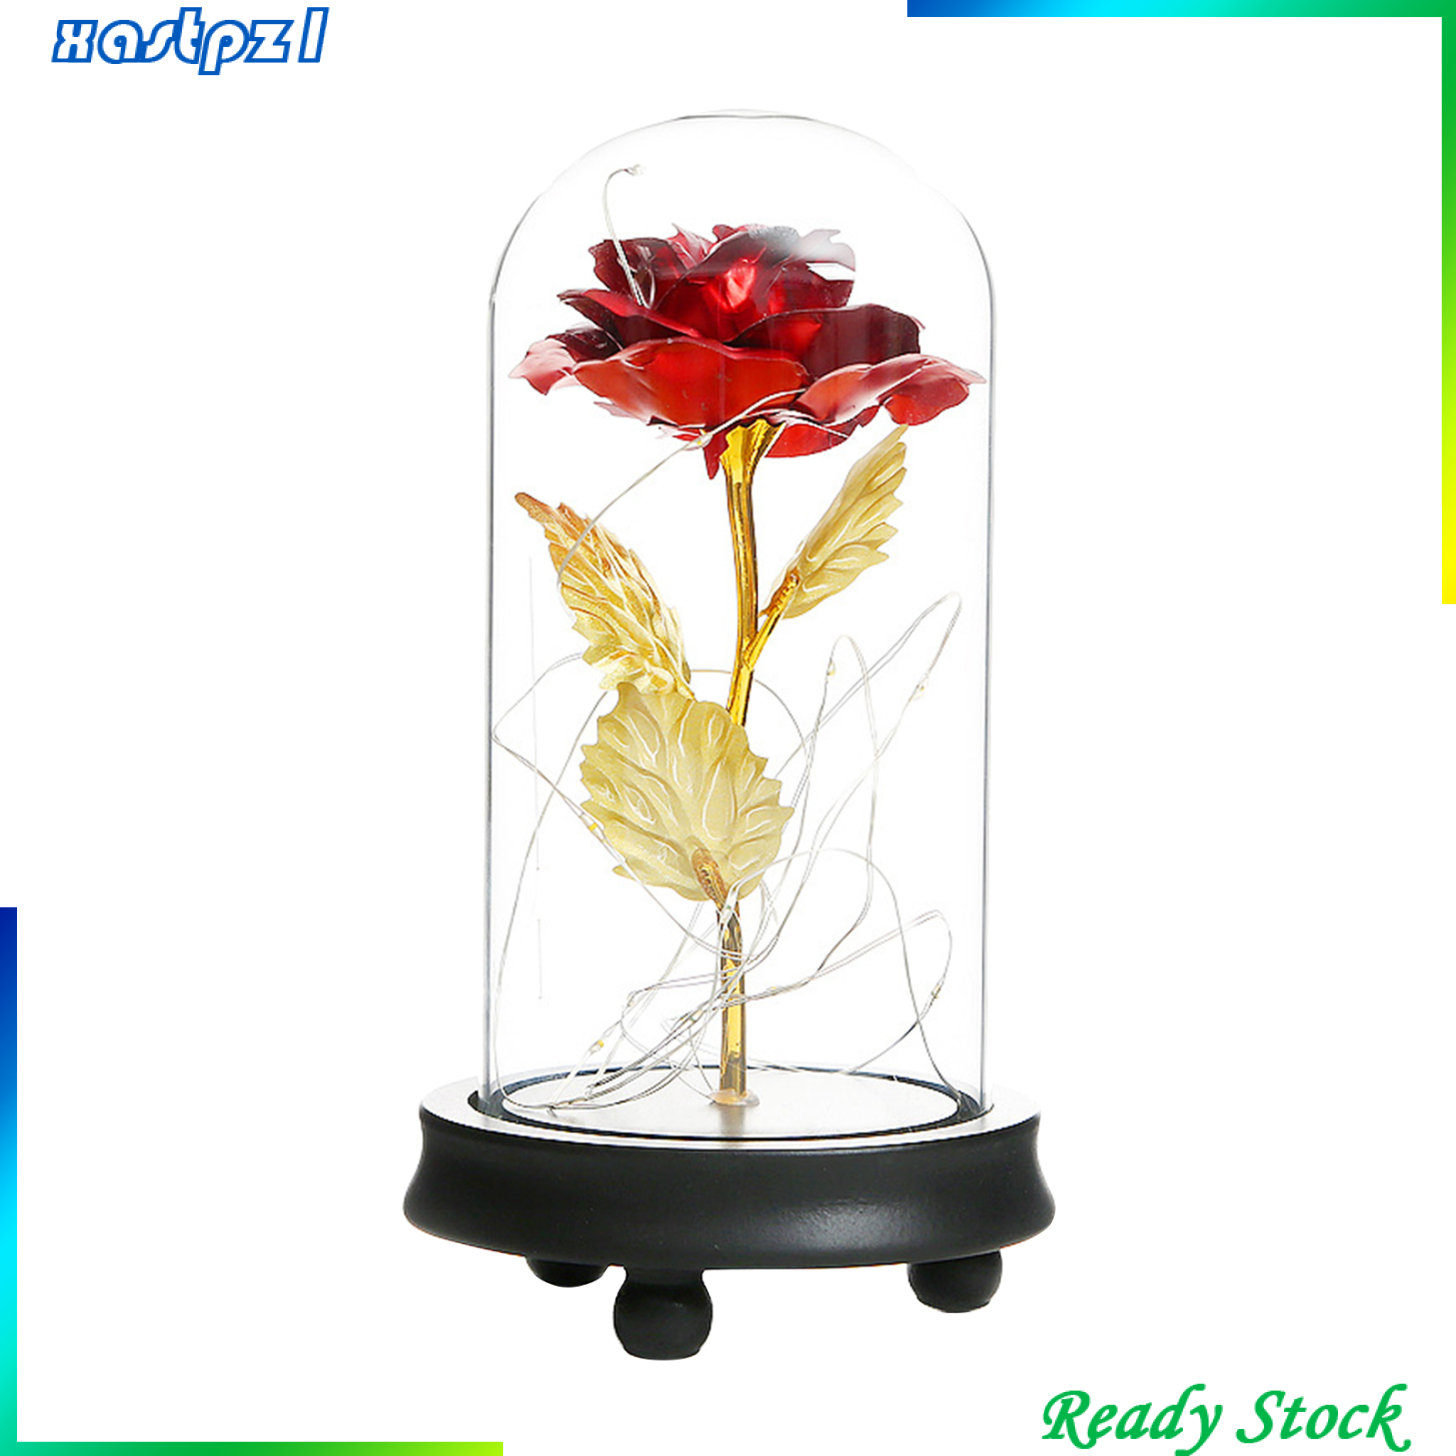 Everlasting Red Rose Flower in Glass Dome Tabletop Flower LED Lamp Light